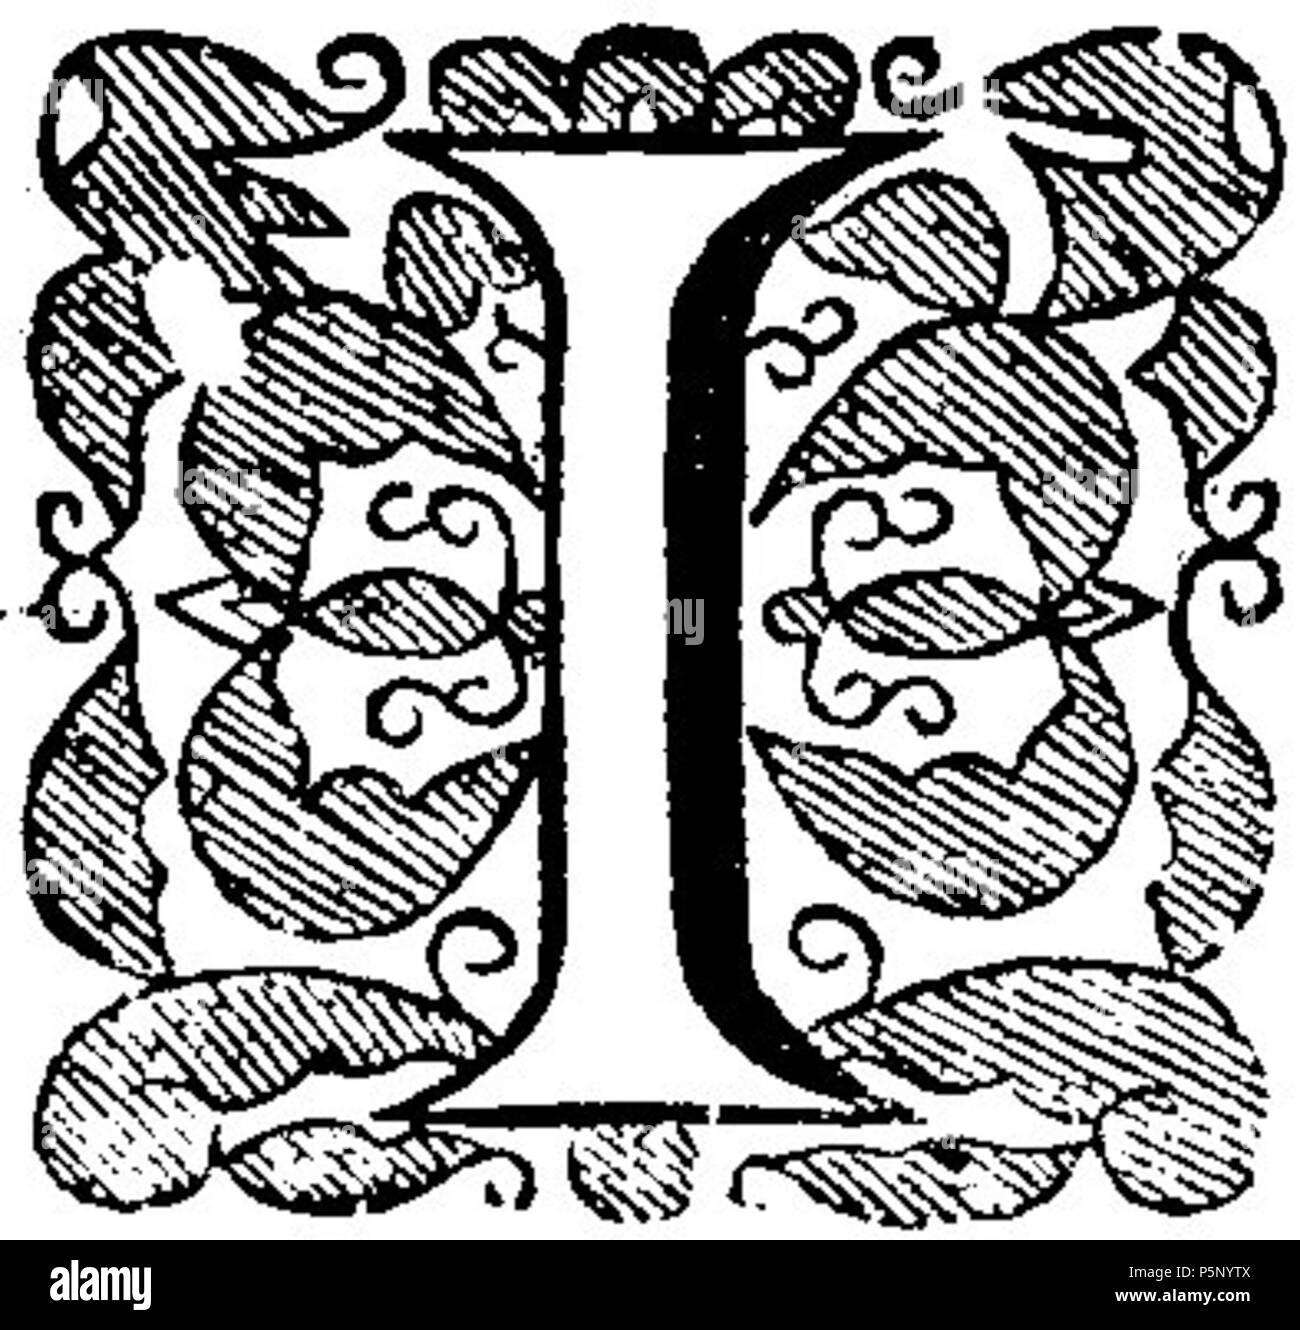 N/A. Inglese: questo è un grafico dalla parte superiore della pagina 025 del libro "L'arte della distillazione " da Giovanni francese, pubblicato 1651. 1651. Giovanni francese (1616-1657) nomi alternativi pseudonimo: J.F.; pseudonimo: J.F. M.D. Descrizione medico inglese, alchimista, farmacia e traduttore Data di nascita e morte 1616 1657 Luogo di nascita e morte di Broughton vicino a Banbury, Oxfordshire vicino a Boulogne-sur-Mer, Francia periodo di lavoro tra circa 1650 e circa 1654 sede di lavoro Inghilterra competente controllo : Q6234224 VIAF:82879613 ISNI:0000 0000 6689 9953 LCCN:N85800996 NLA:35785401 Aprire Libreria:OL2375141A Foto Stock